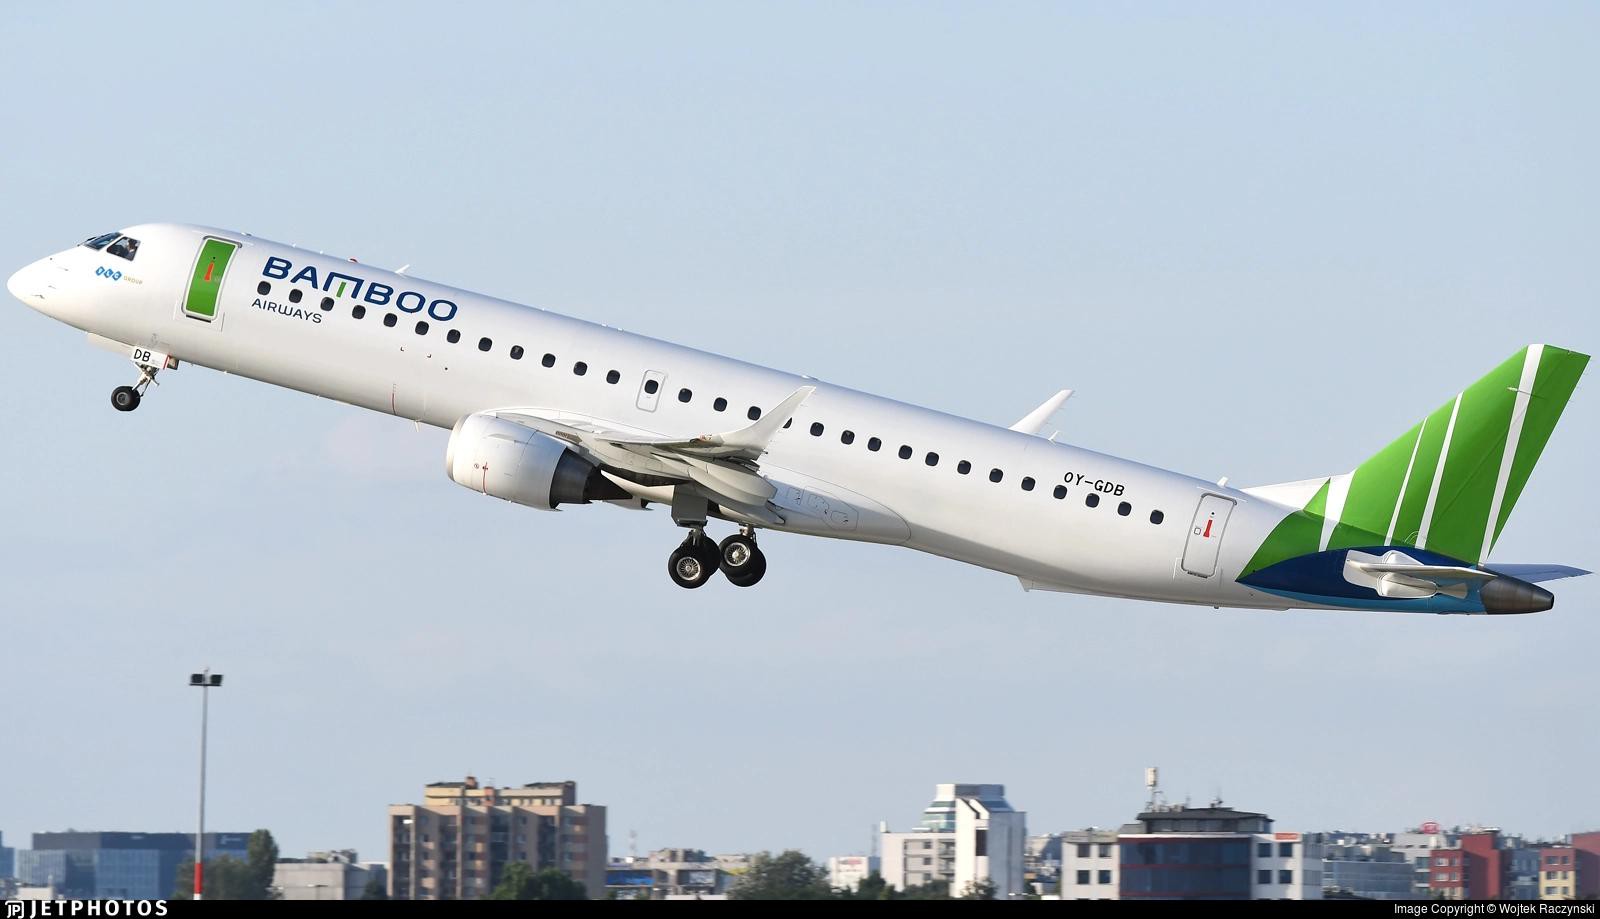 Rò rỉ hình ảnh máy bay phản lực thế hệ mới Embraer E195 được cho là sắp bay Côn Đảo